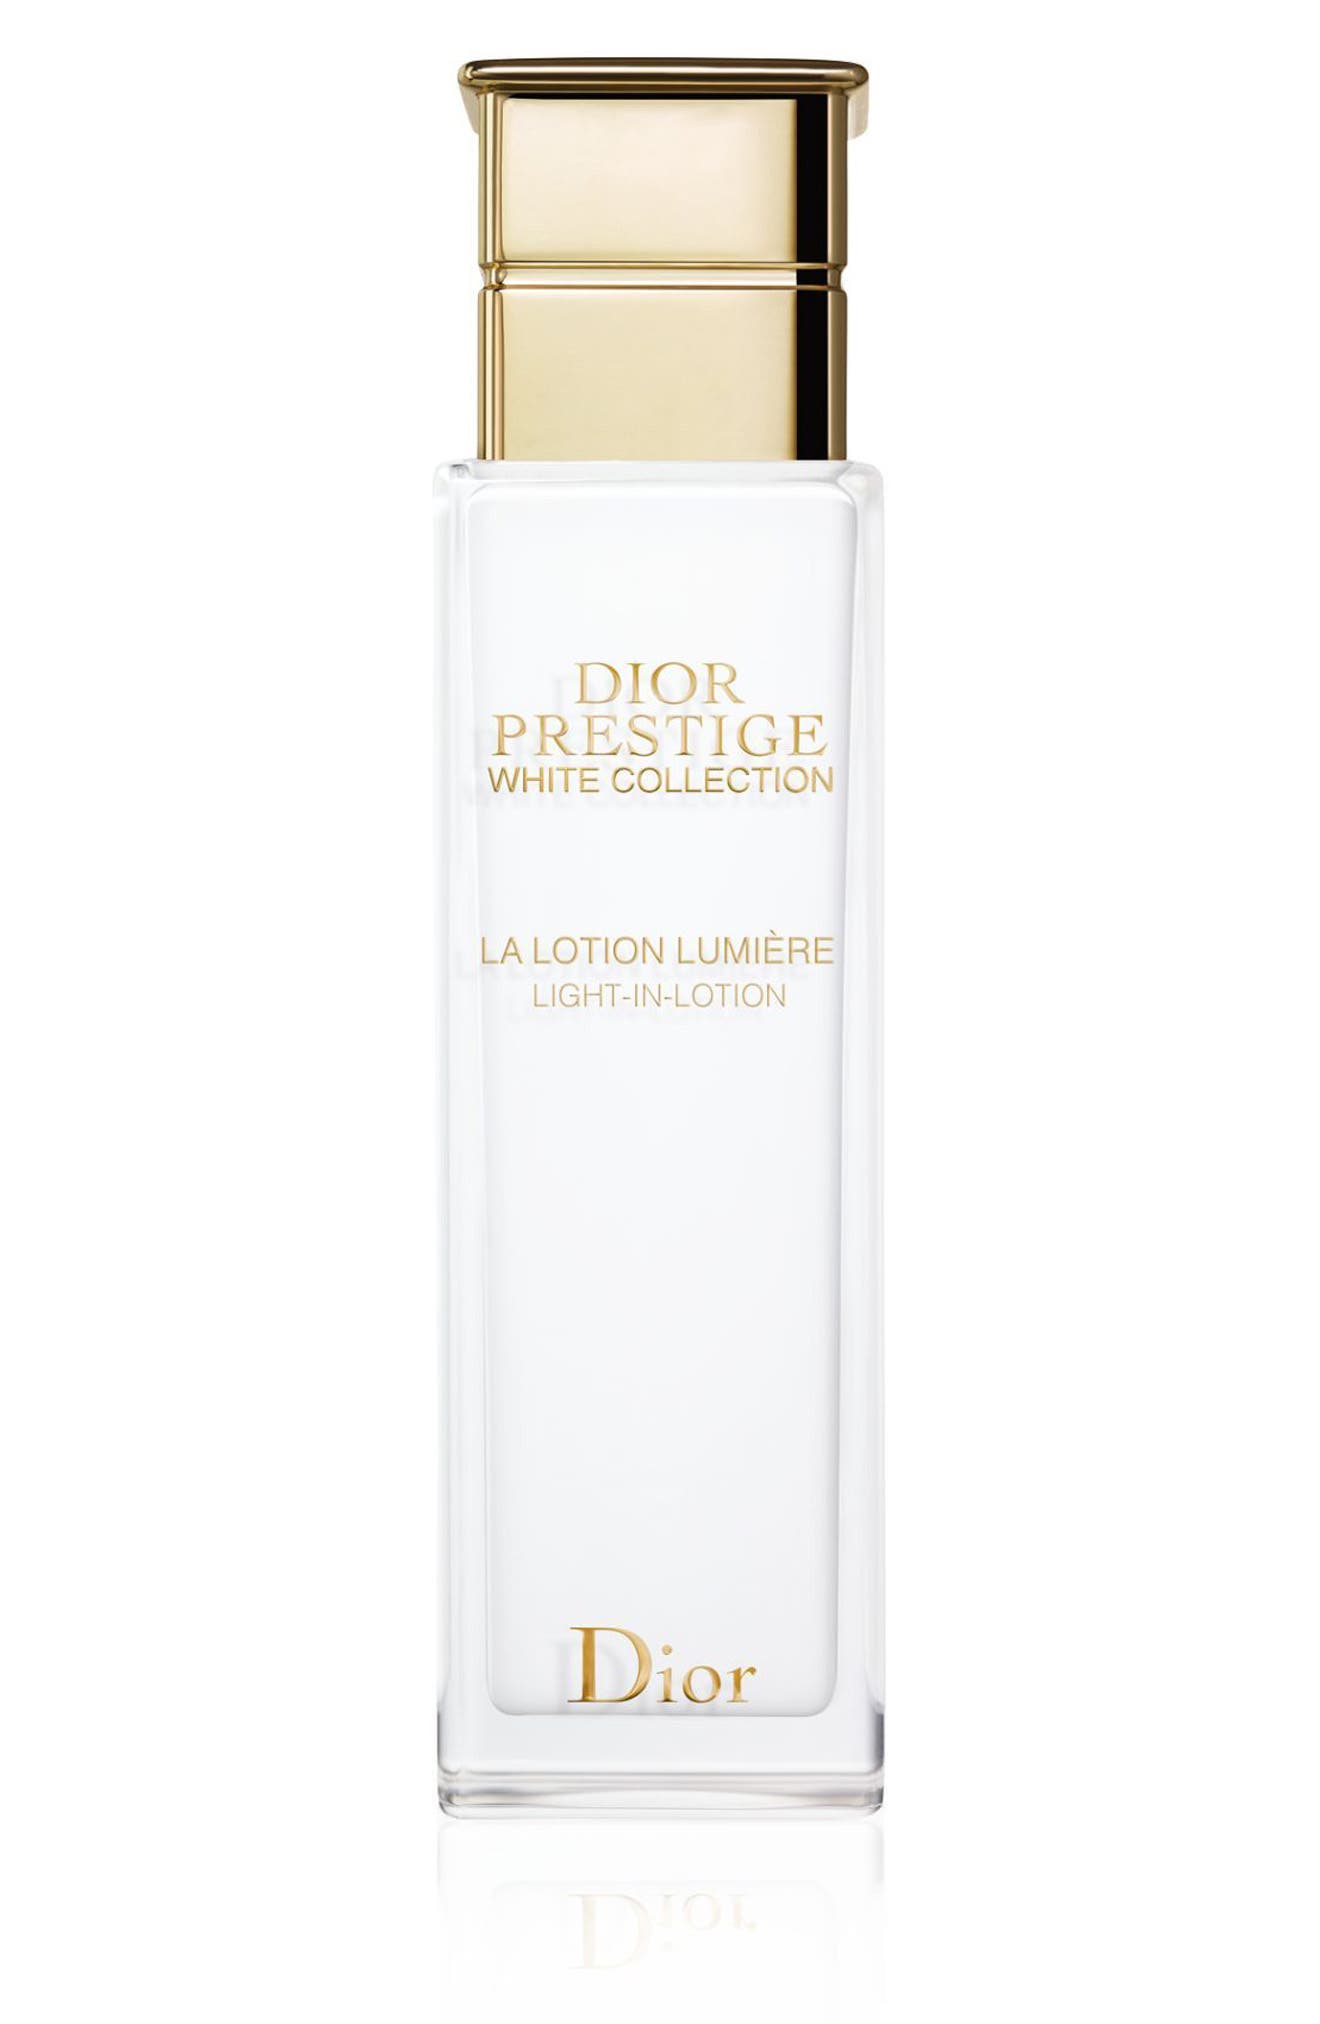 dior prestige white collection